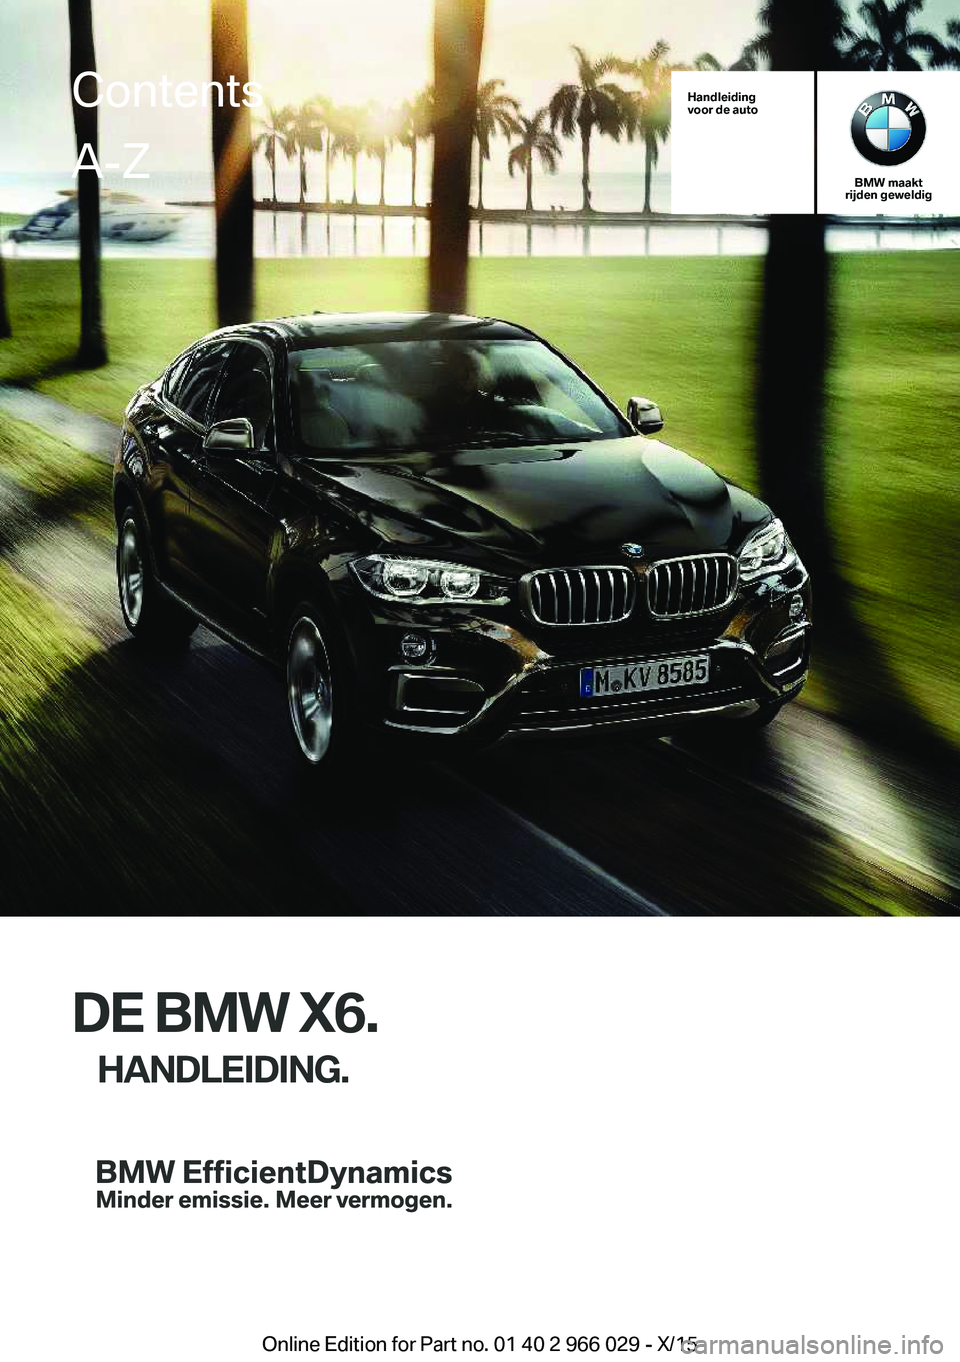 BMW X6 2016  Instructieboekjes (in Dutch) Handleiding
voor de auto
BMW maakt
rijden geweldig
DE BMW X6.
HANDLEIDING.
ContentsA-Z
Online Edition for Part no. 01 40 2 966 029 - X/15   